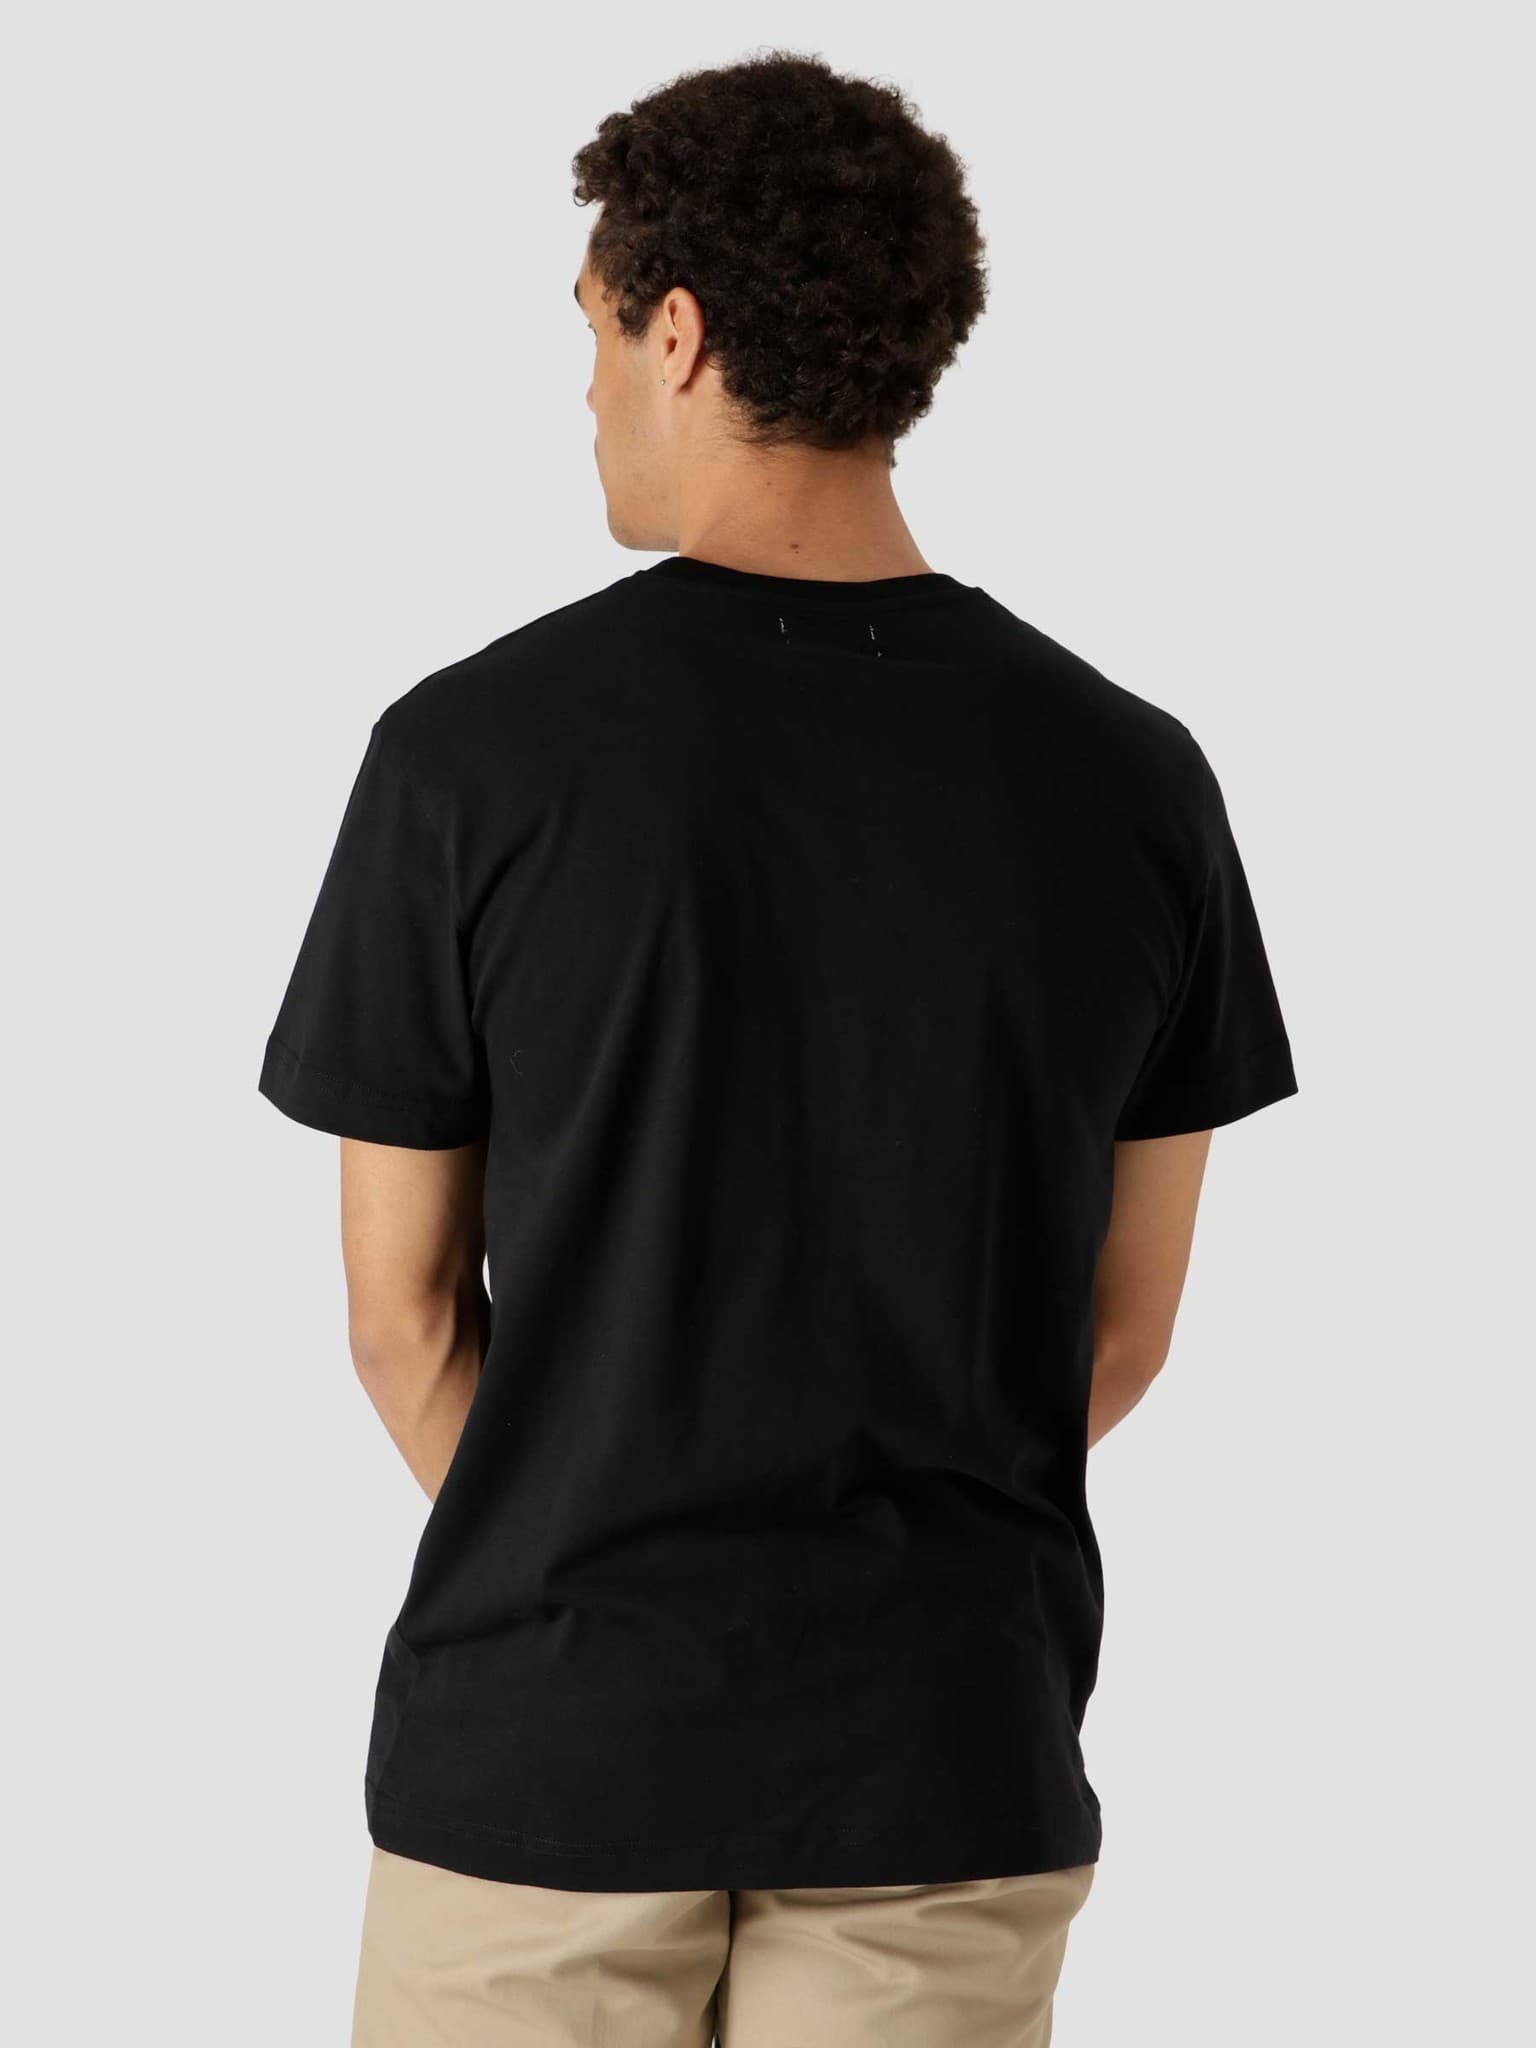 Beat Pulpo II T-Shirt Black 1868